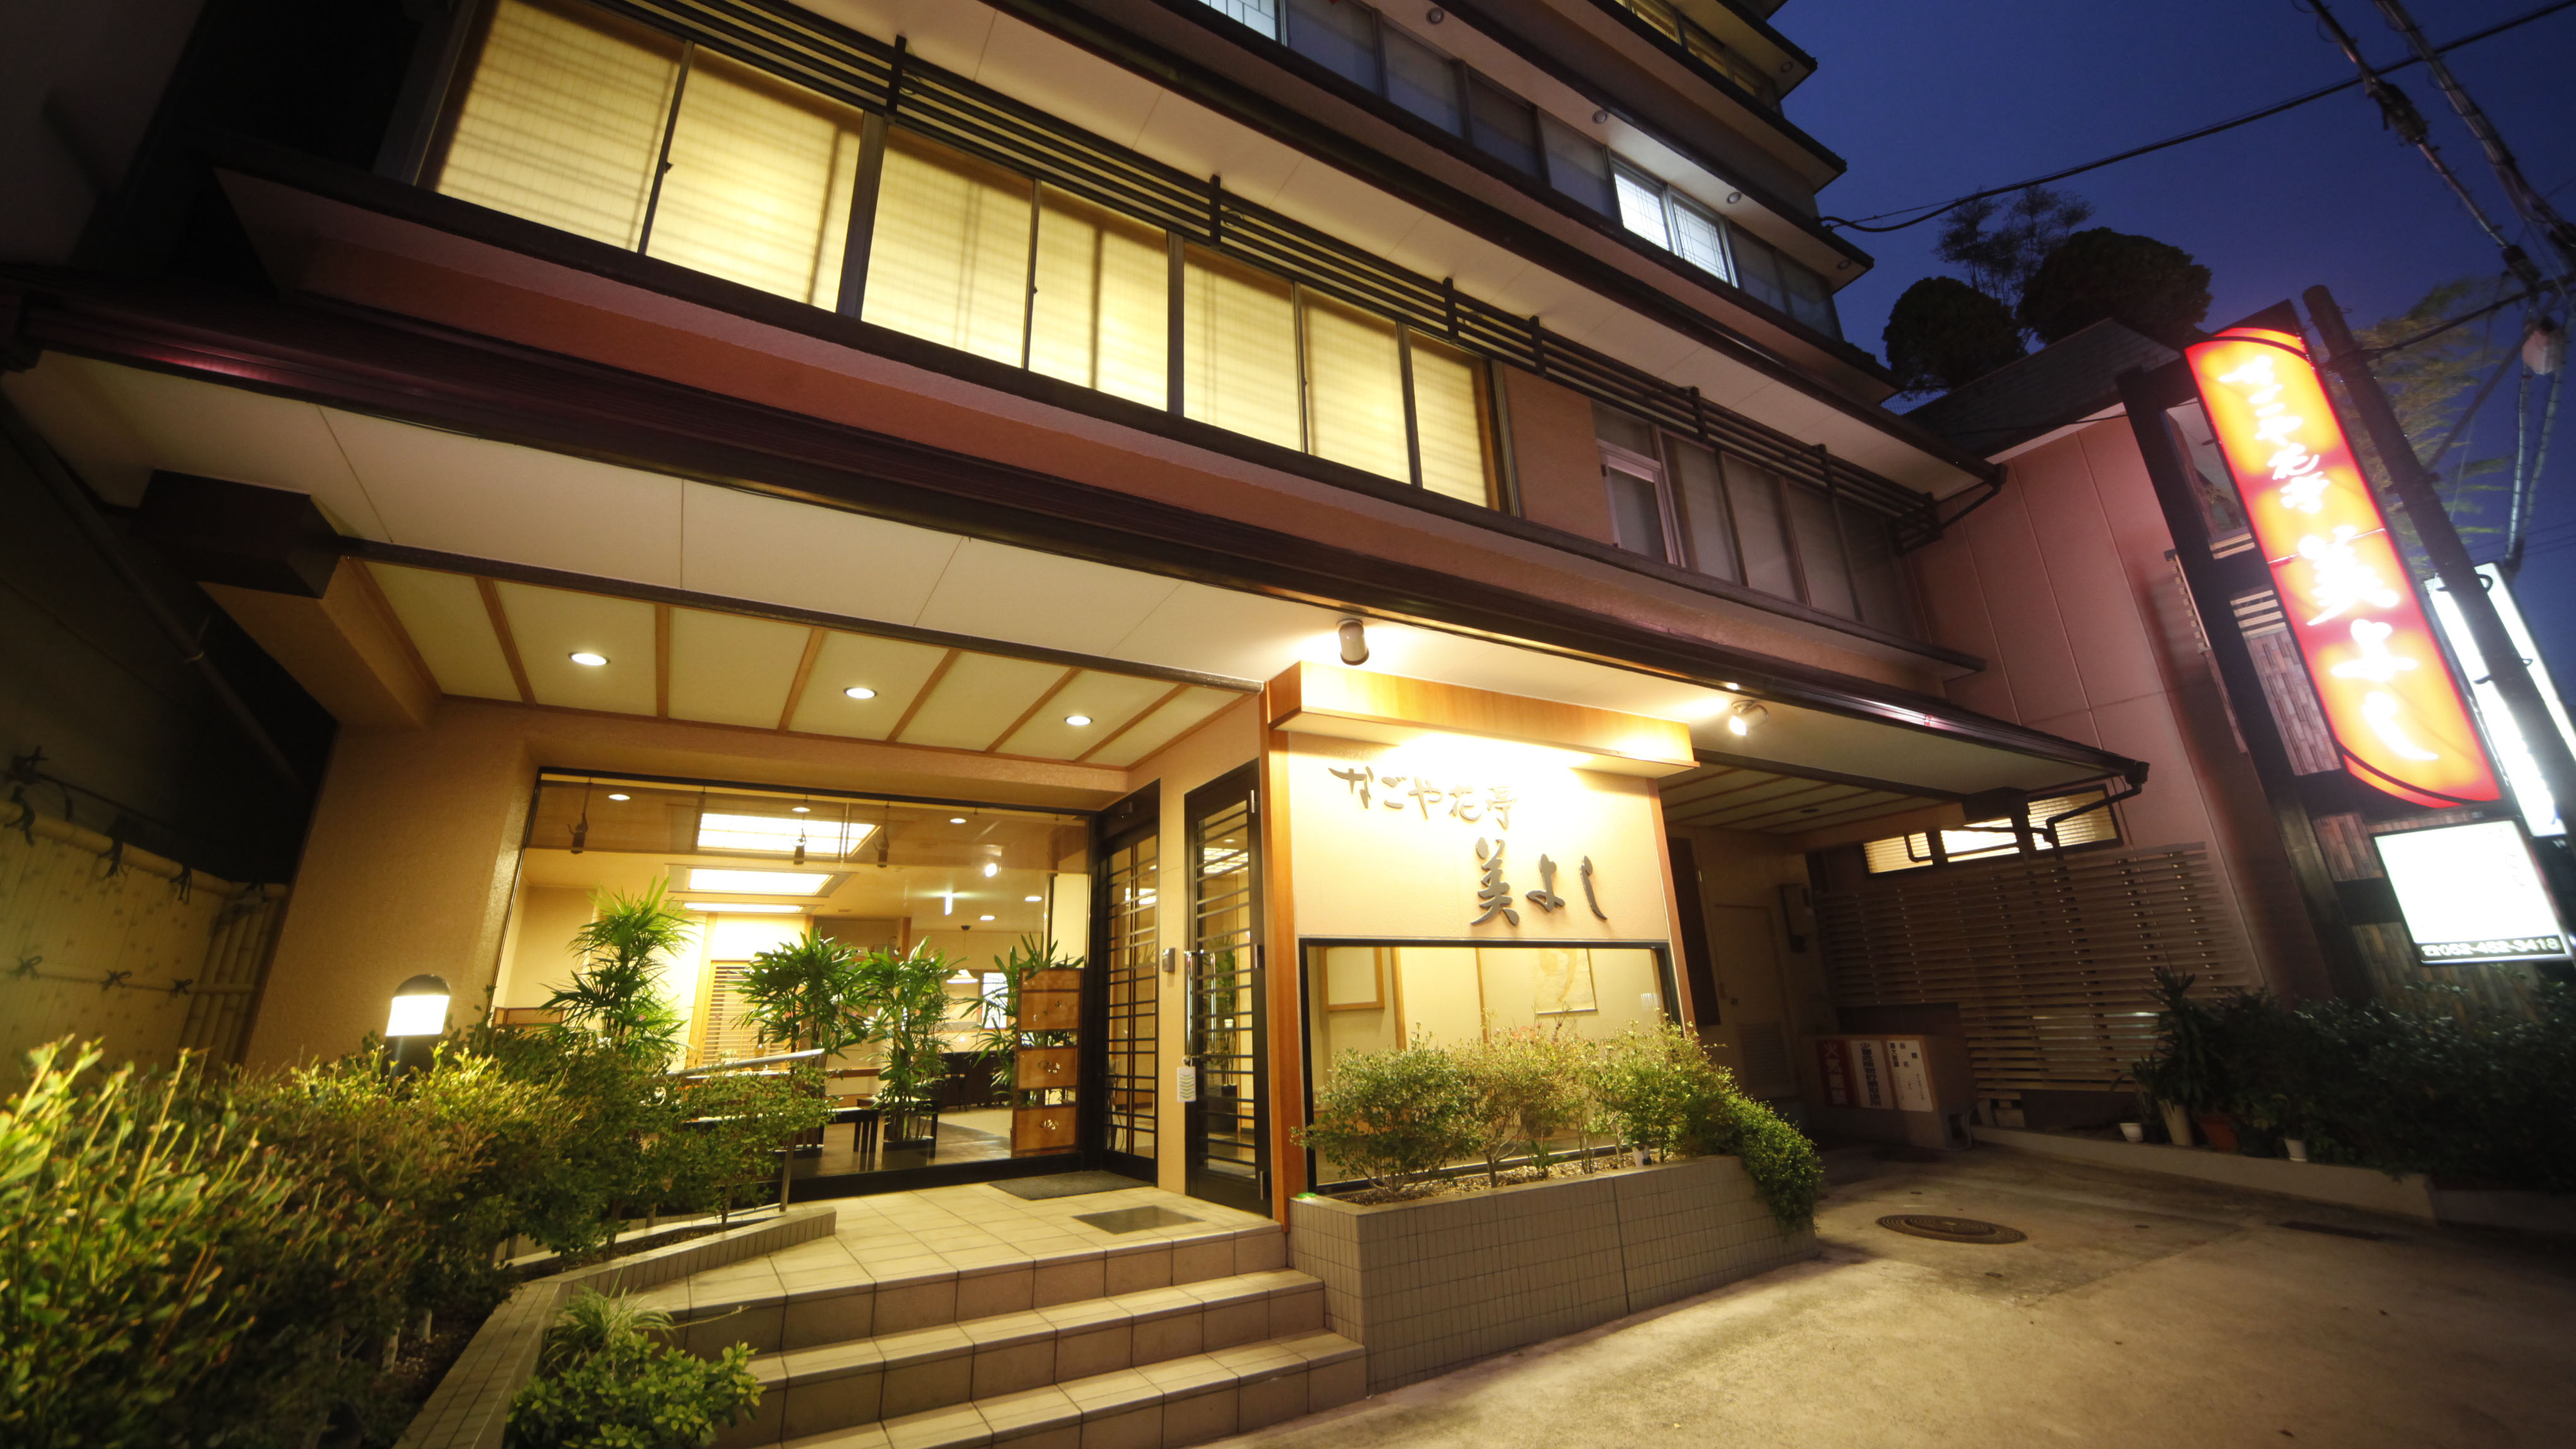 名古屋で部屋食できる高級旅館かルームサービスがおすすめの高級ホテル